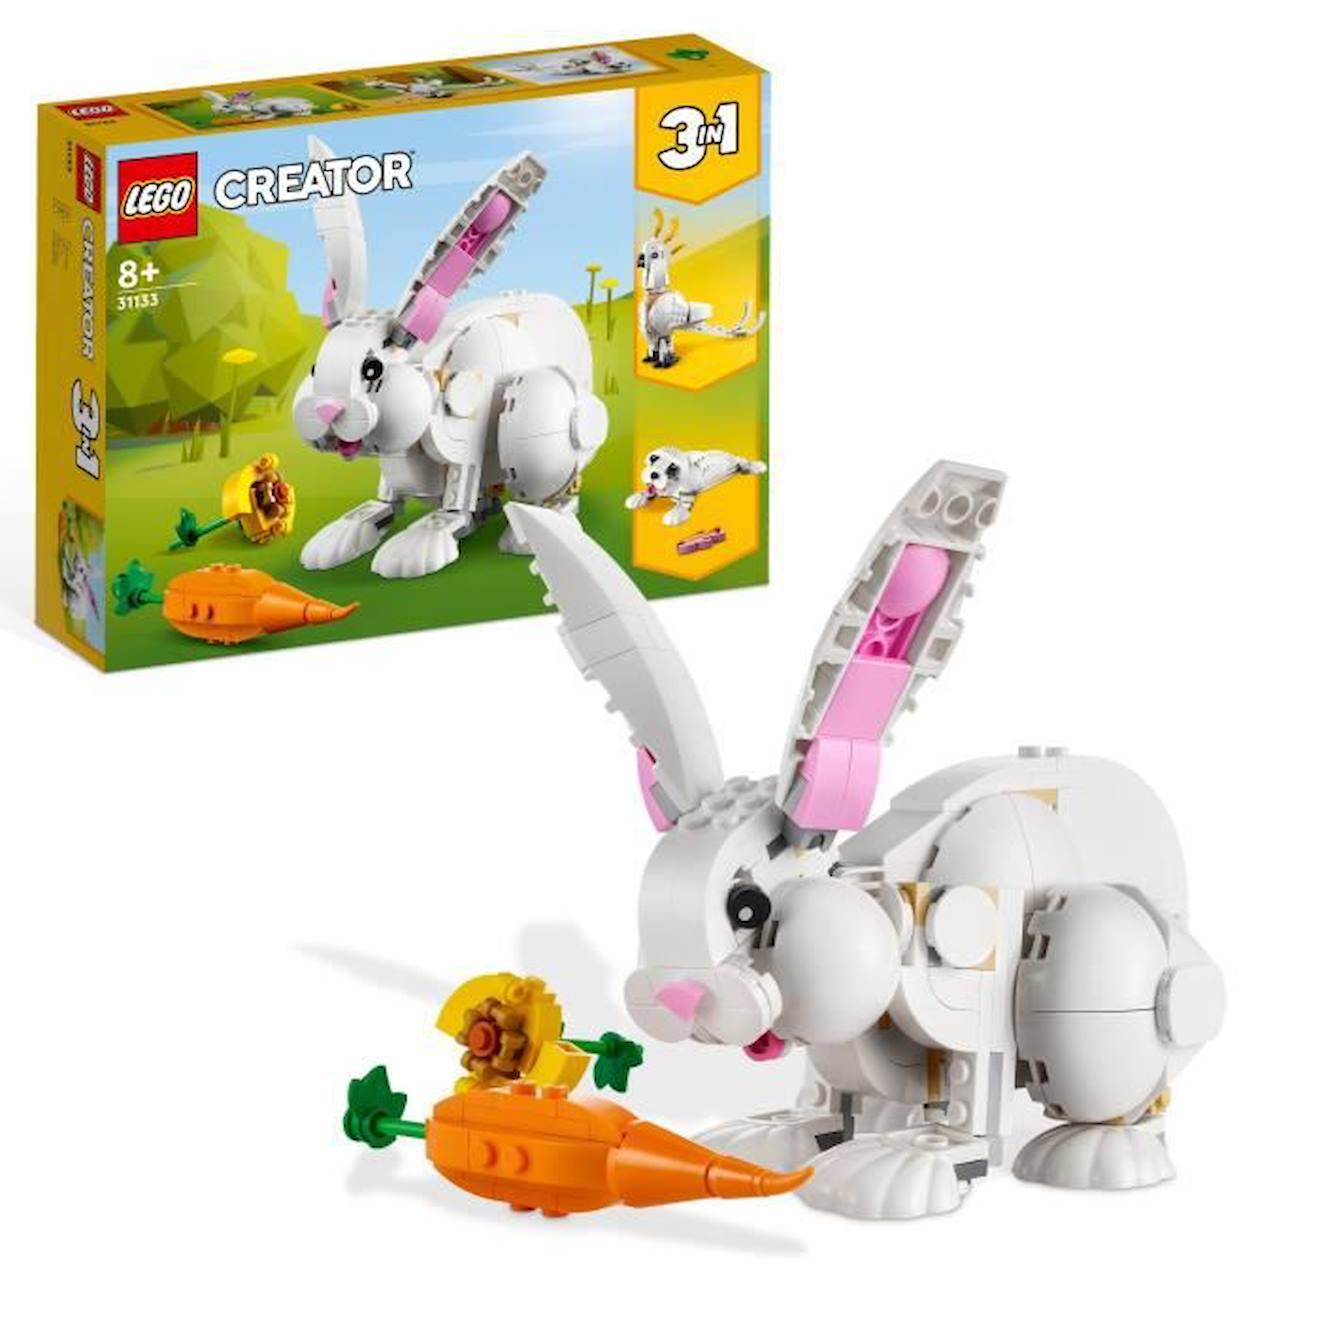 Lego Creator 3-en-1 31133 Le Lapin Blanc, Avec Des Figurines Animaux Poissons, Phoques Et Perroquets